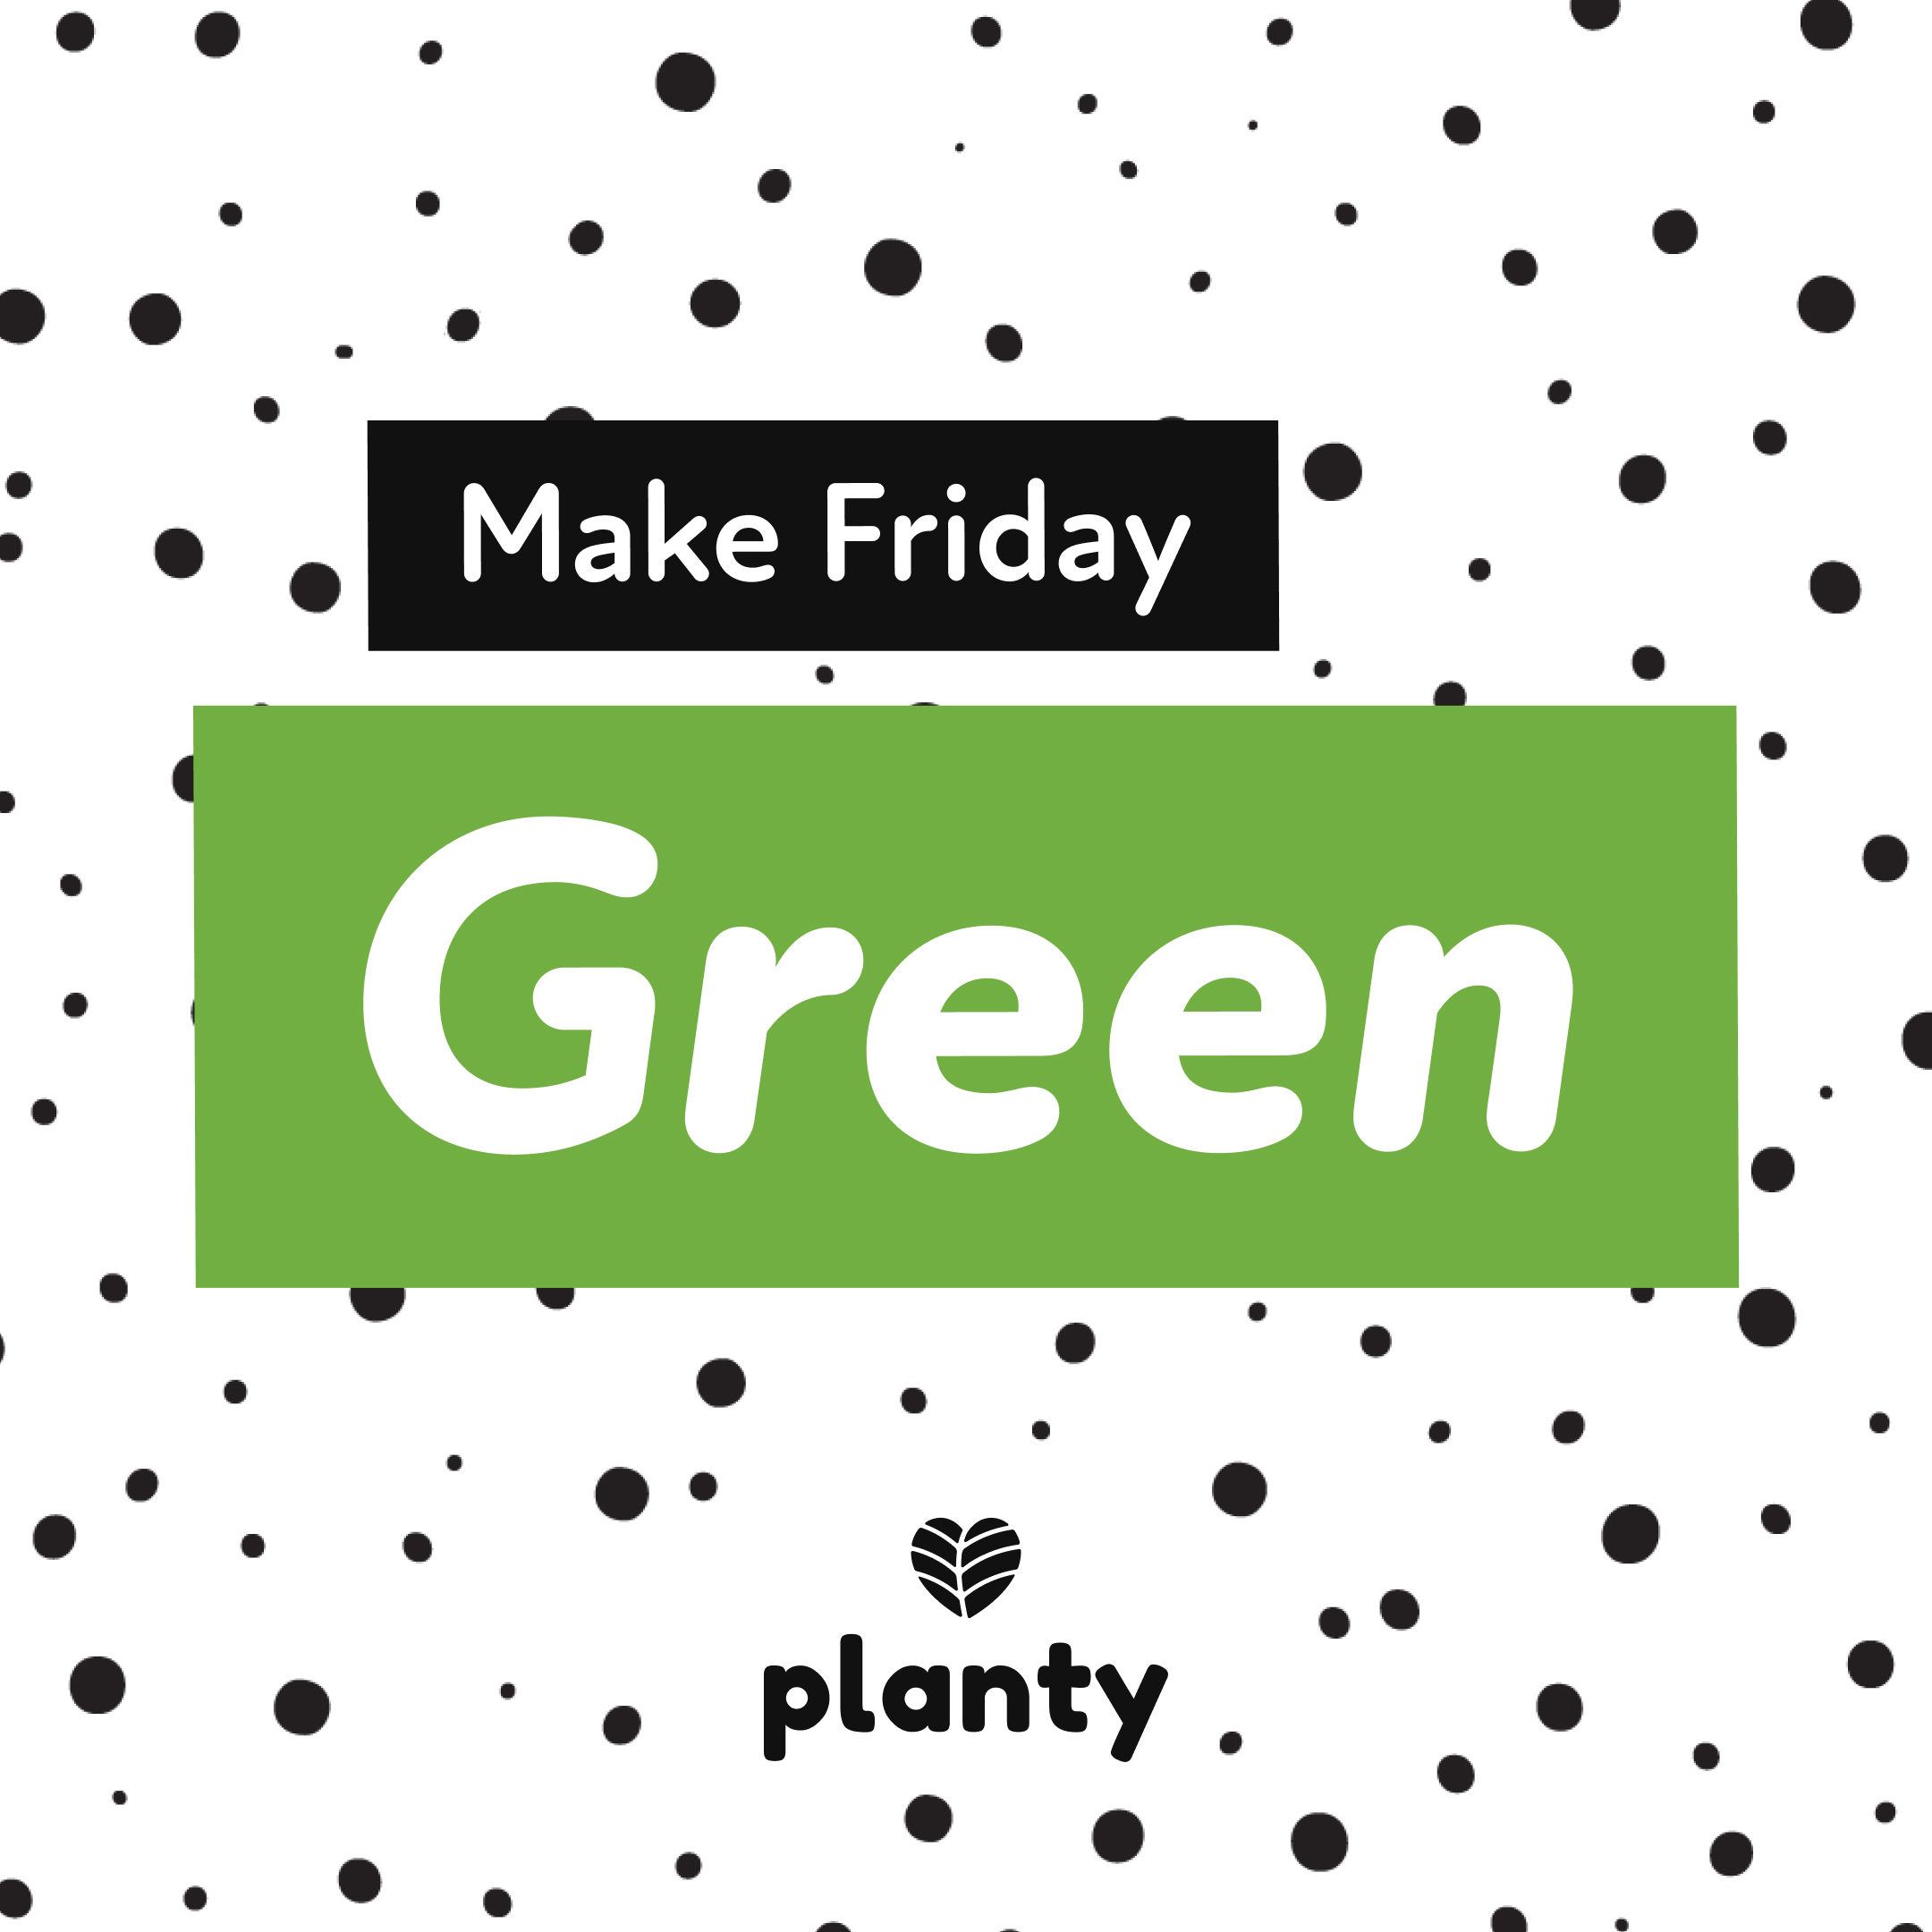 Make Friday Green